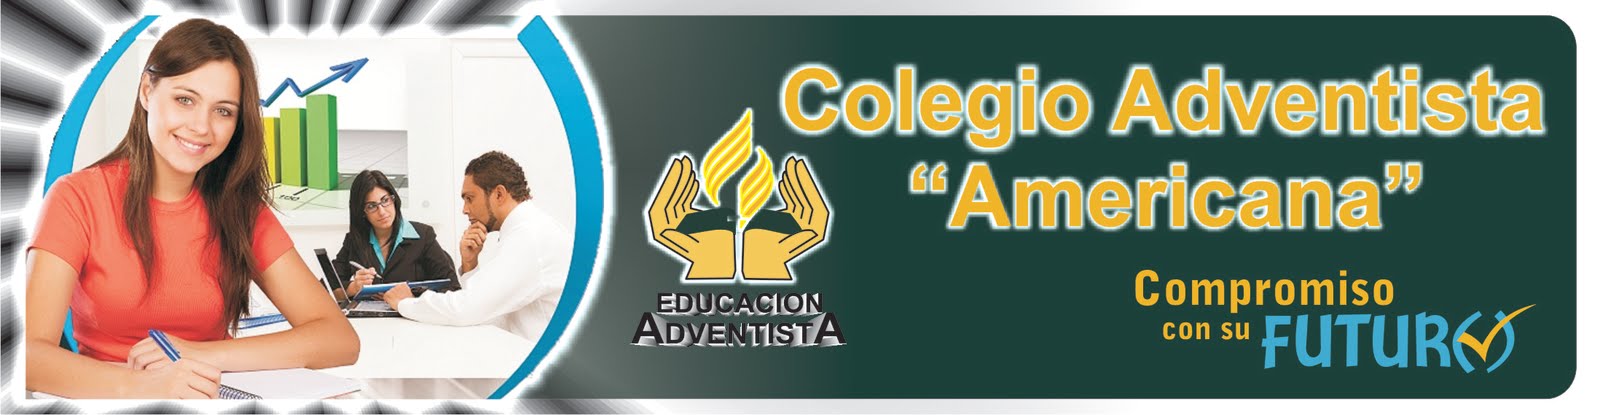 Colegio Adventista Americana